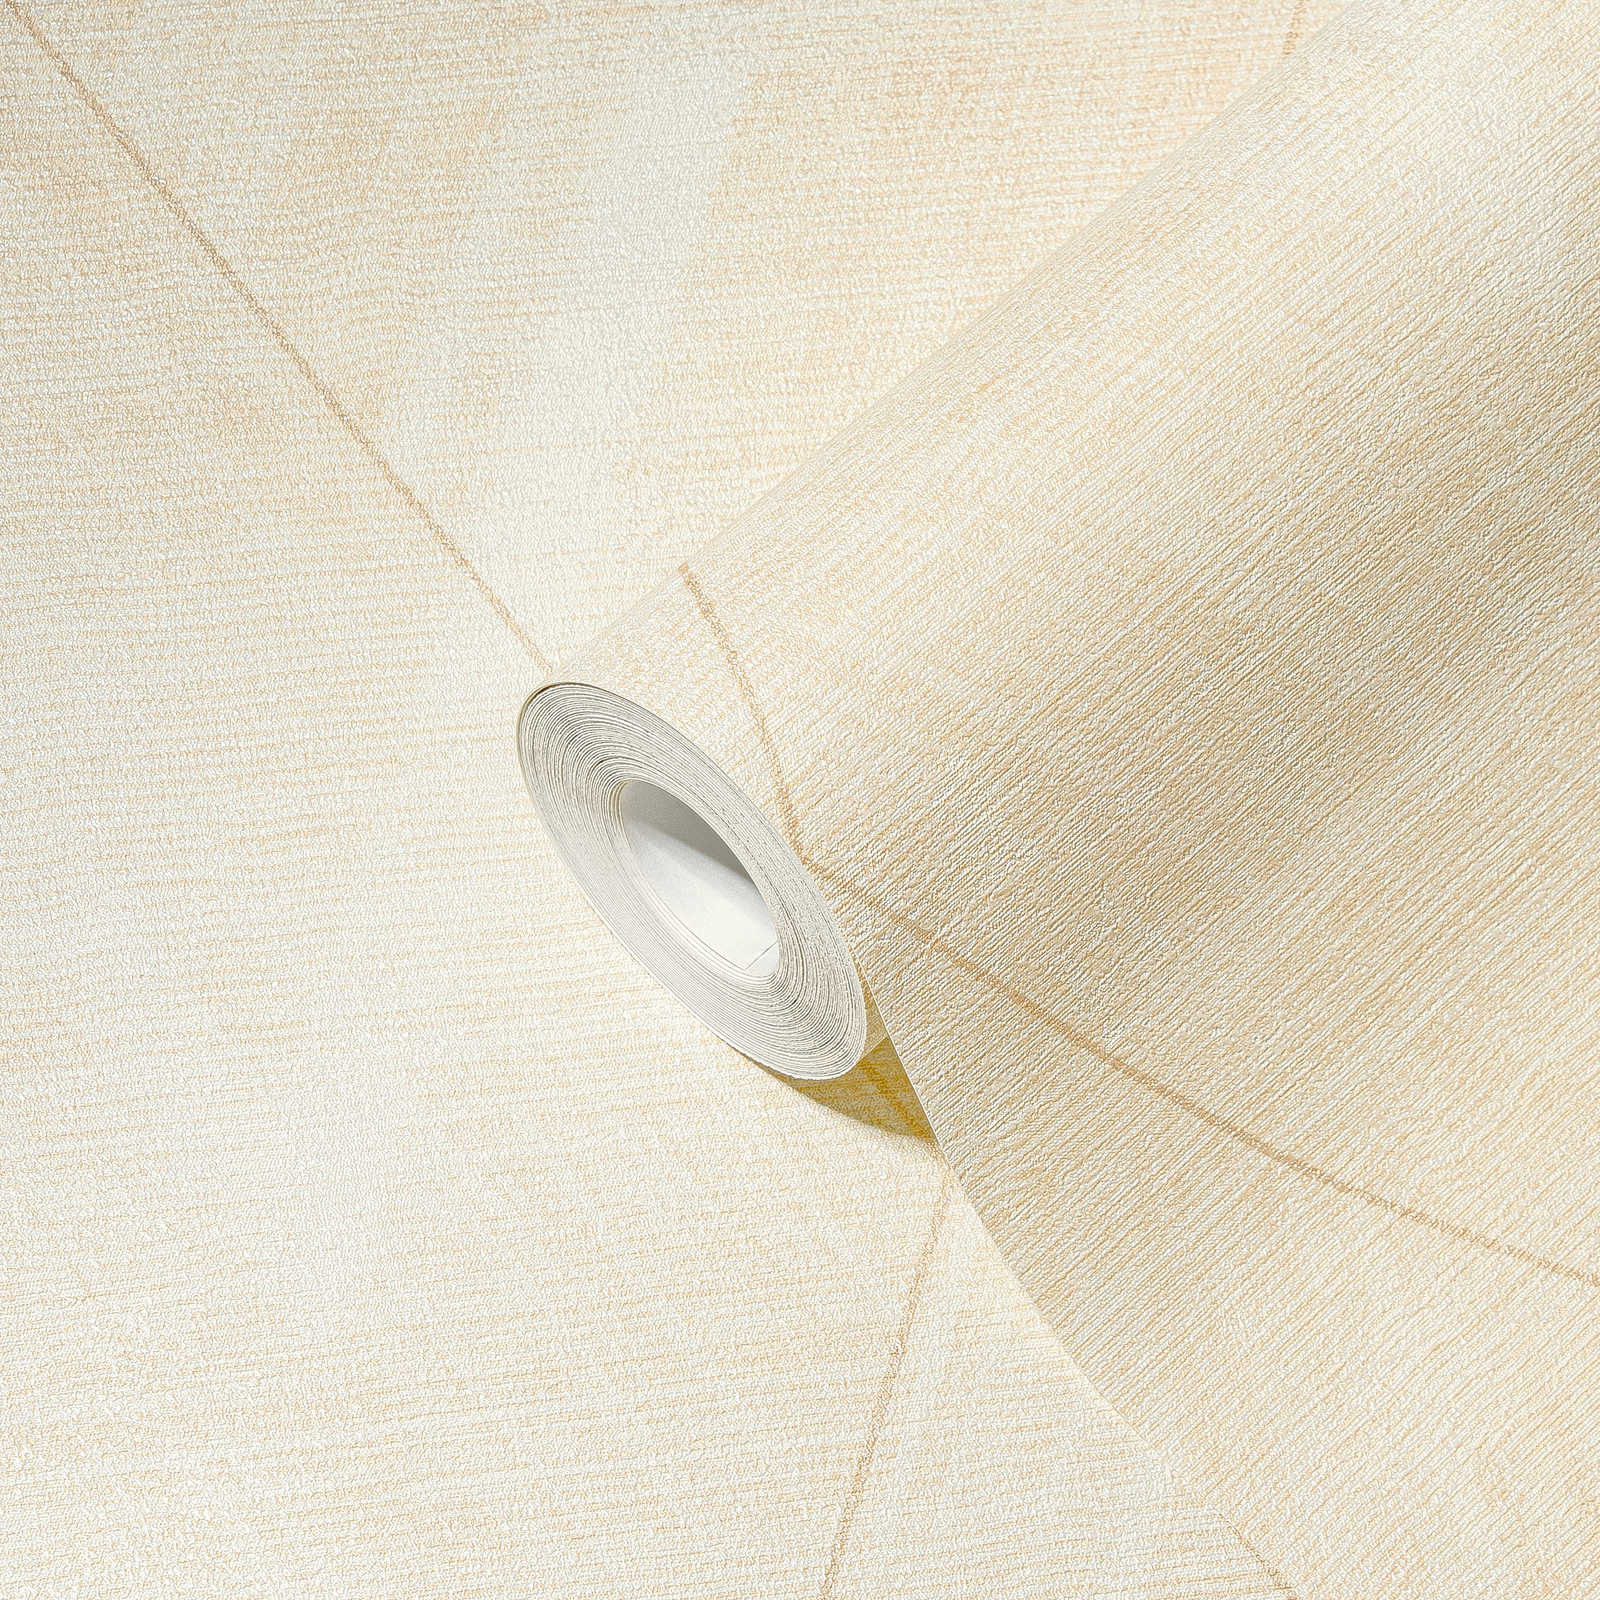             Ruitjesbehang met textieloptiek - metallic, crème, geel
        